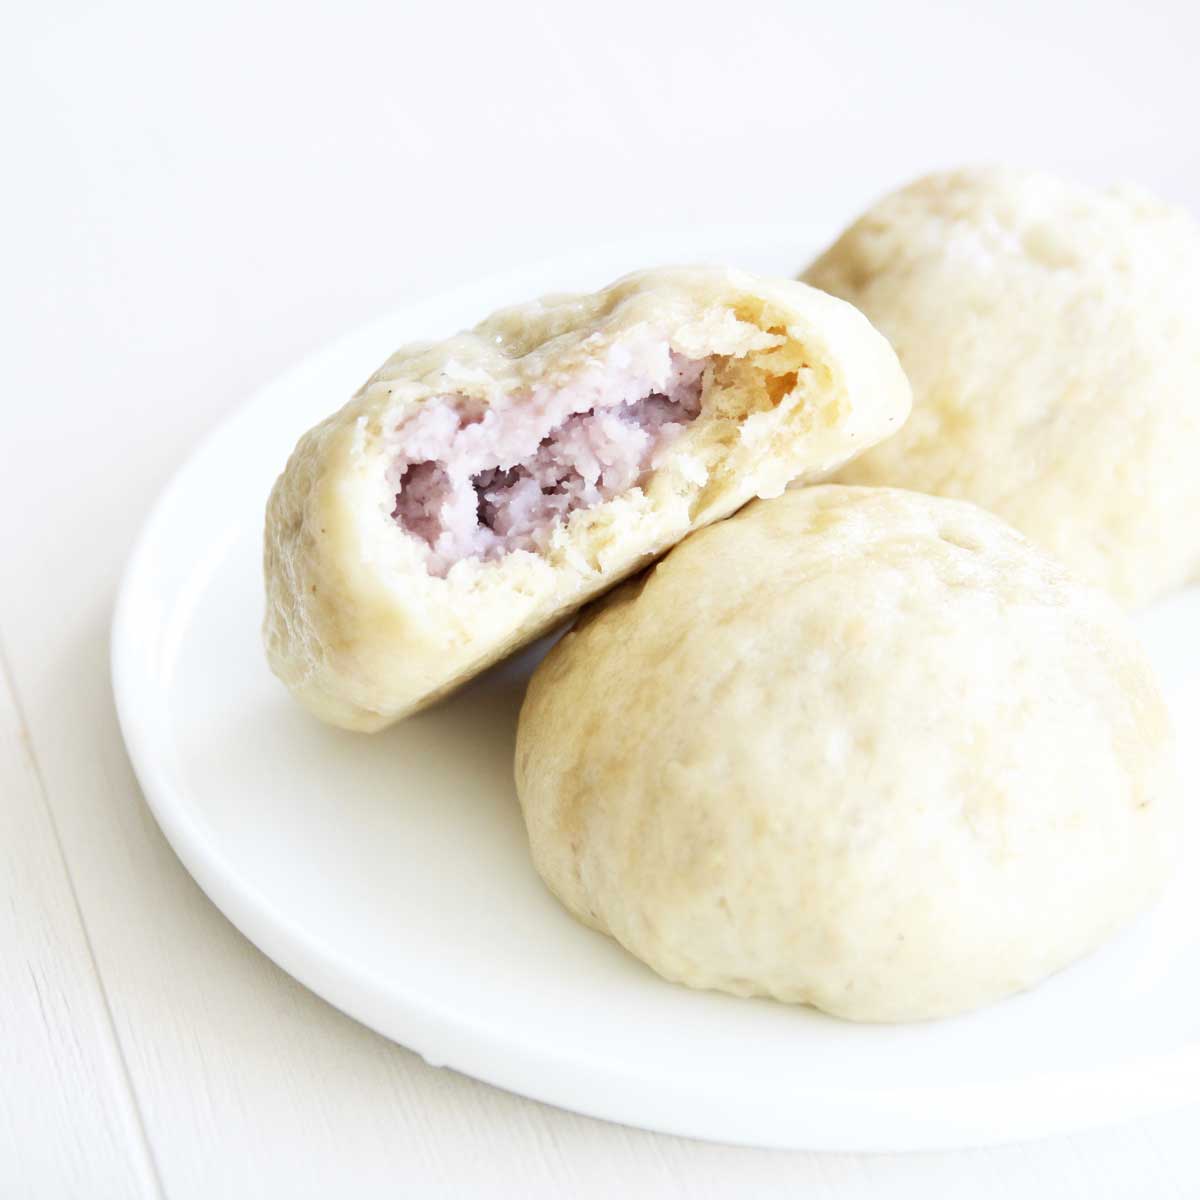 helathy sweet steamed bun filling ideas - taro paste